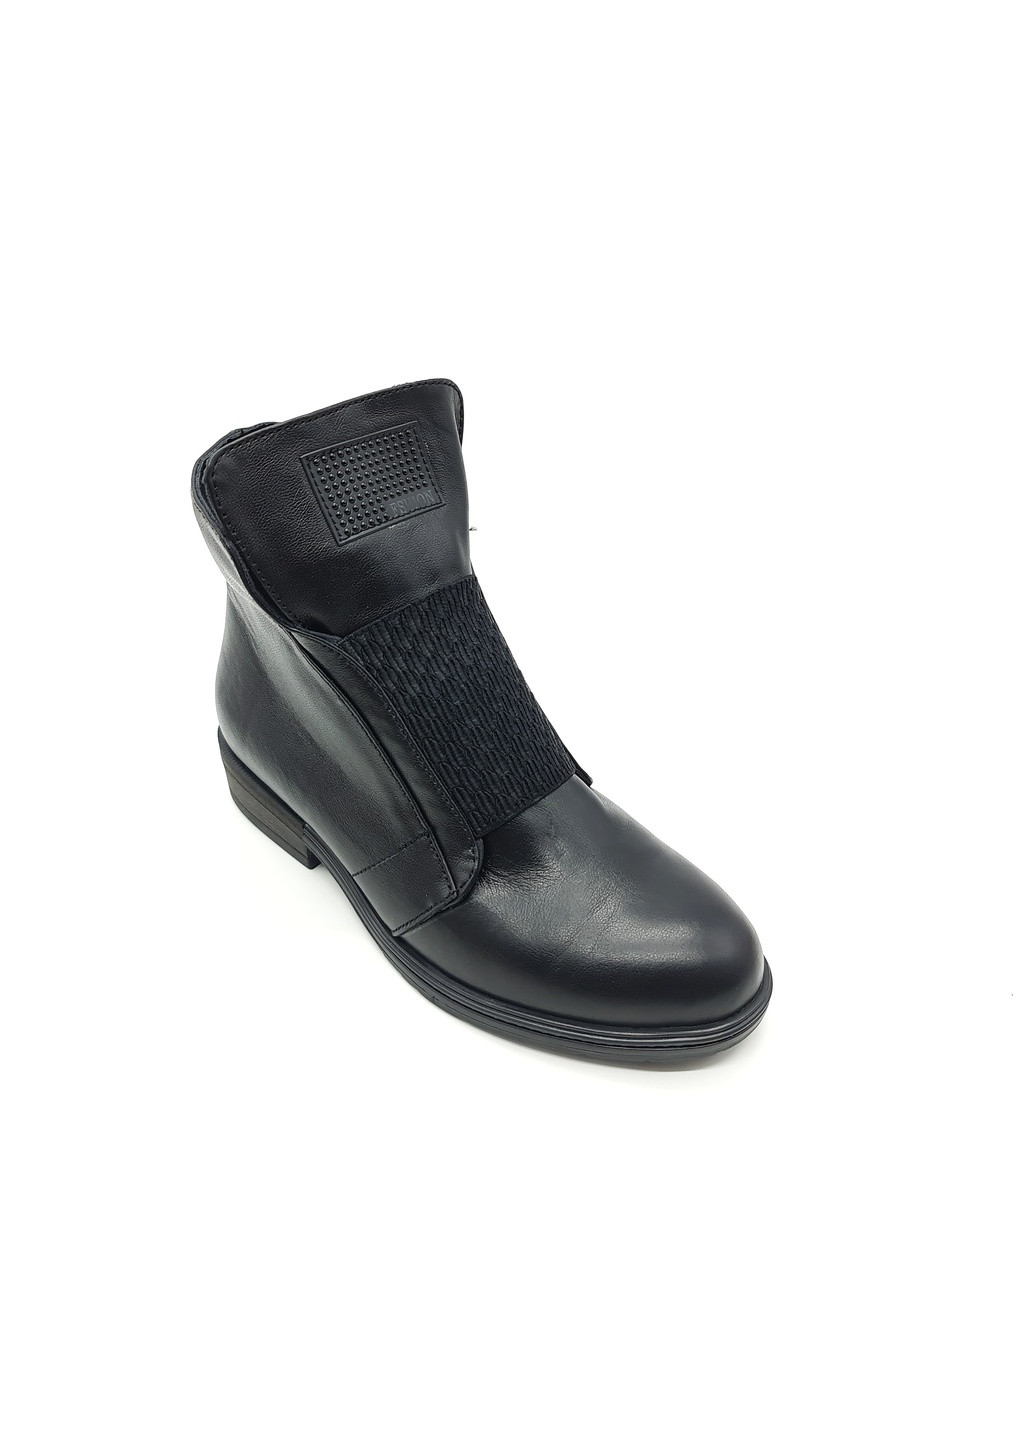 Осенние женские ботинки черные кожаные kr-19-5 24 см (р) Kristal